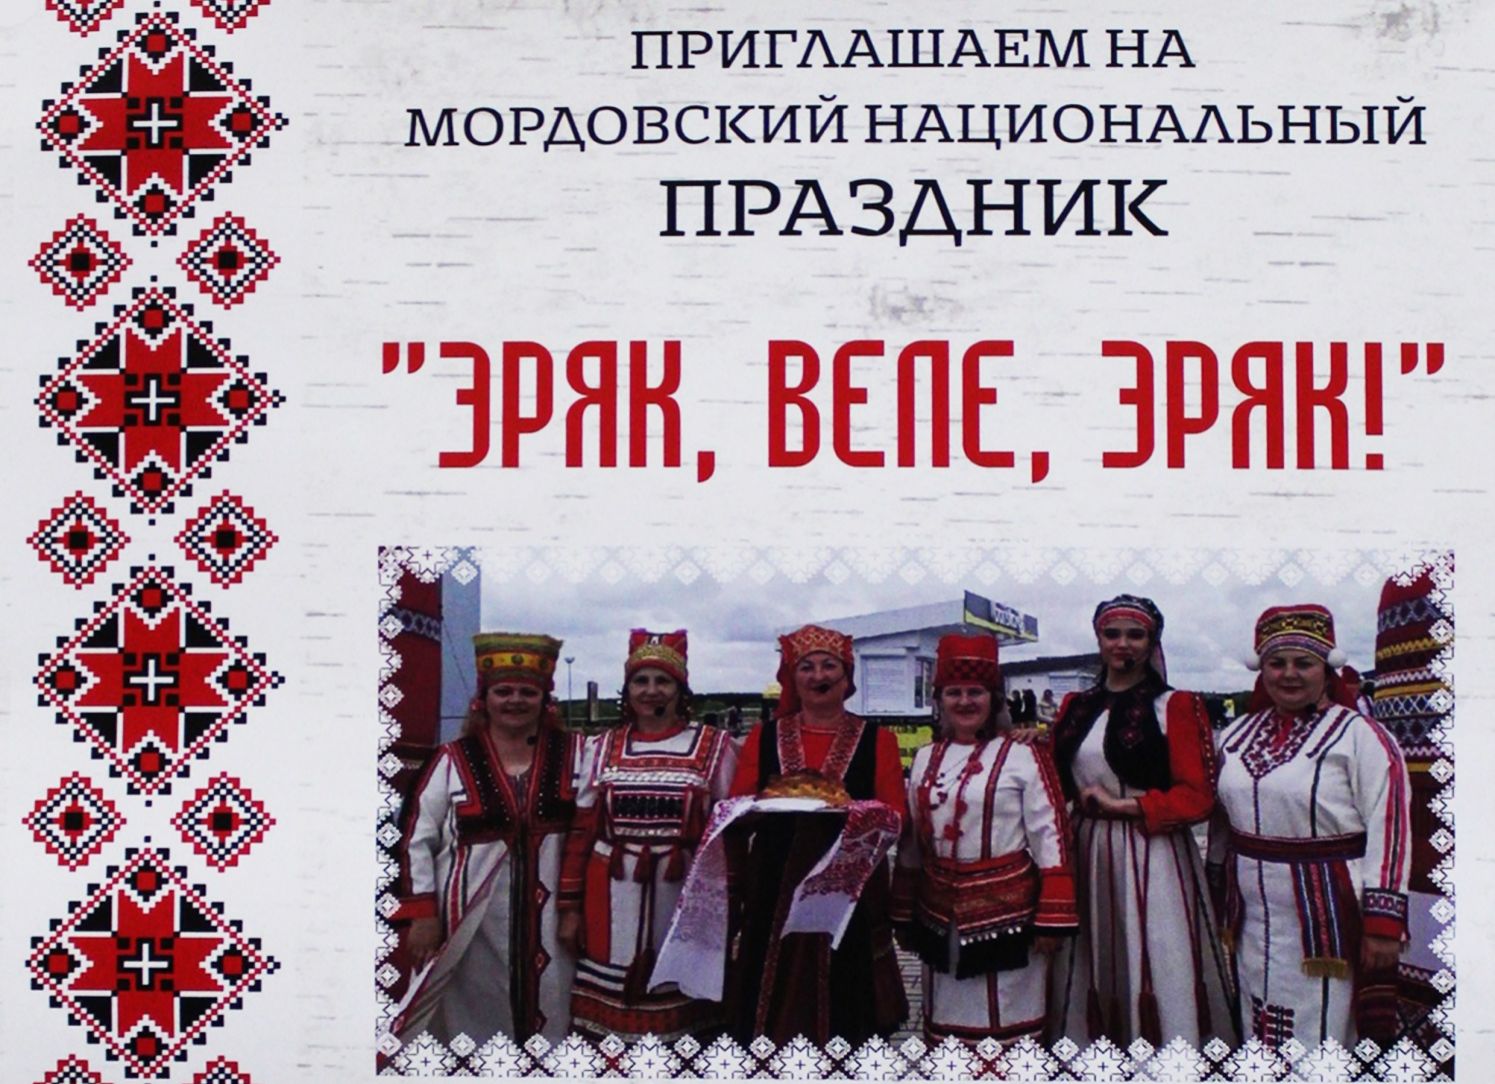 В Городищенском районе пройдет фестиваль «Эряк, веле эряк!»